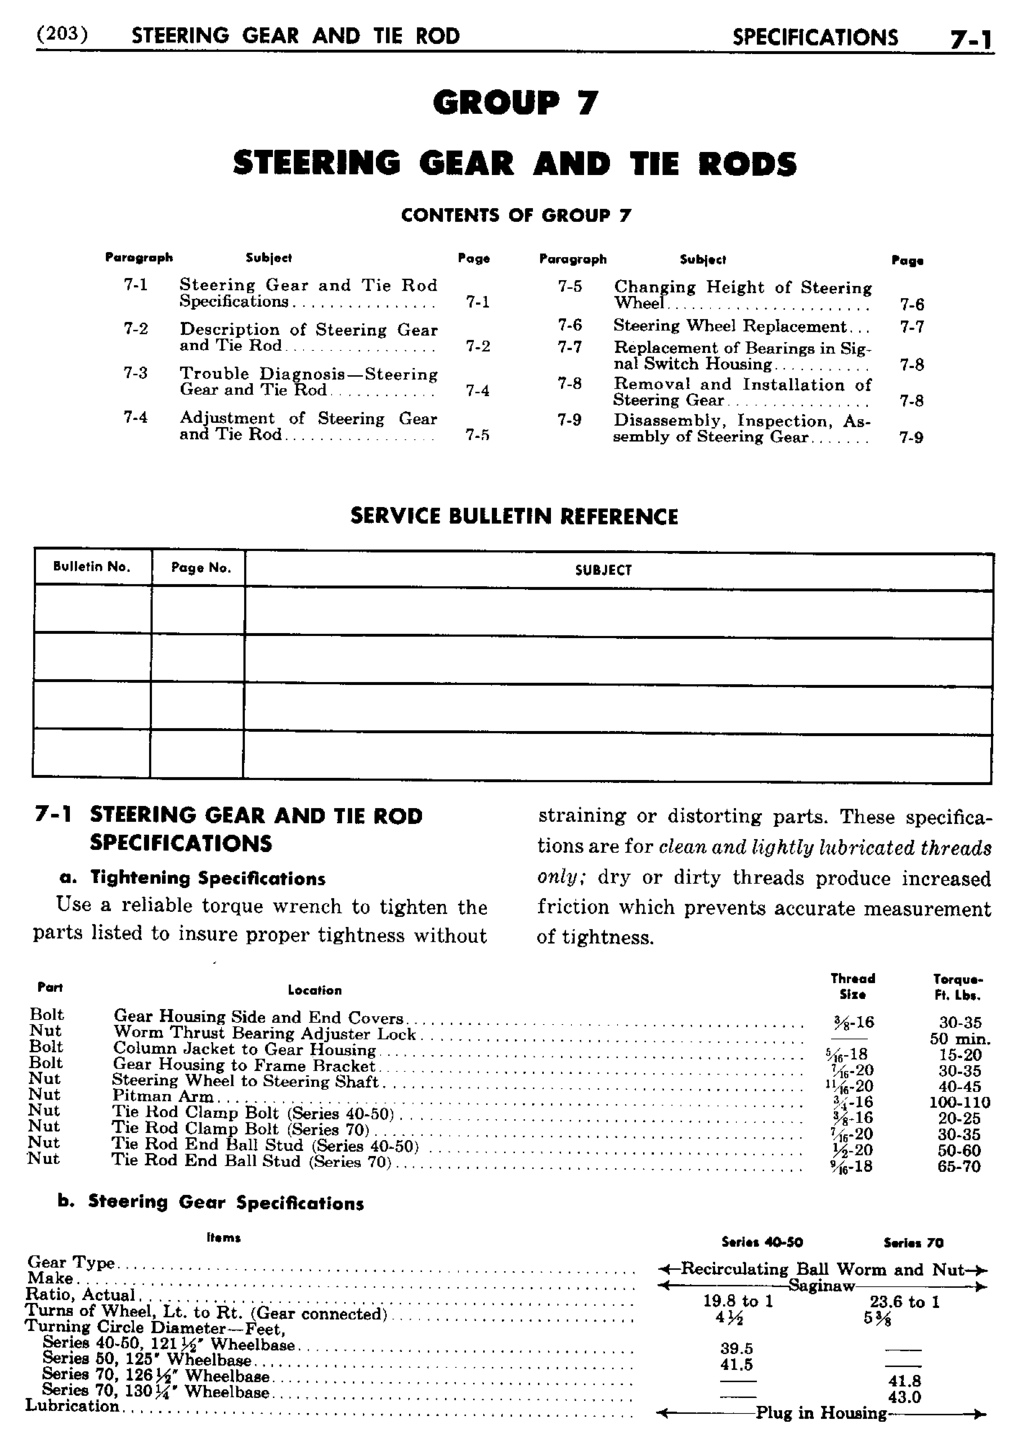 n_08 1950 Buick Shop Manual - Steering-001-001.jpg